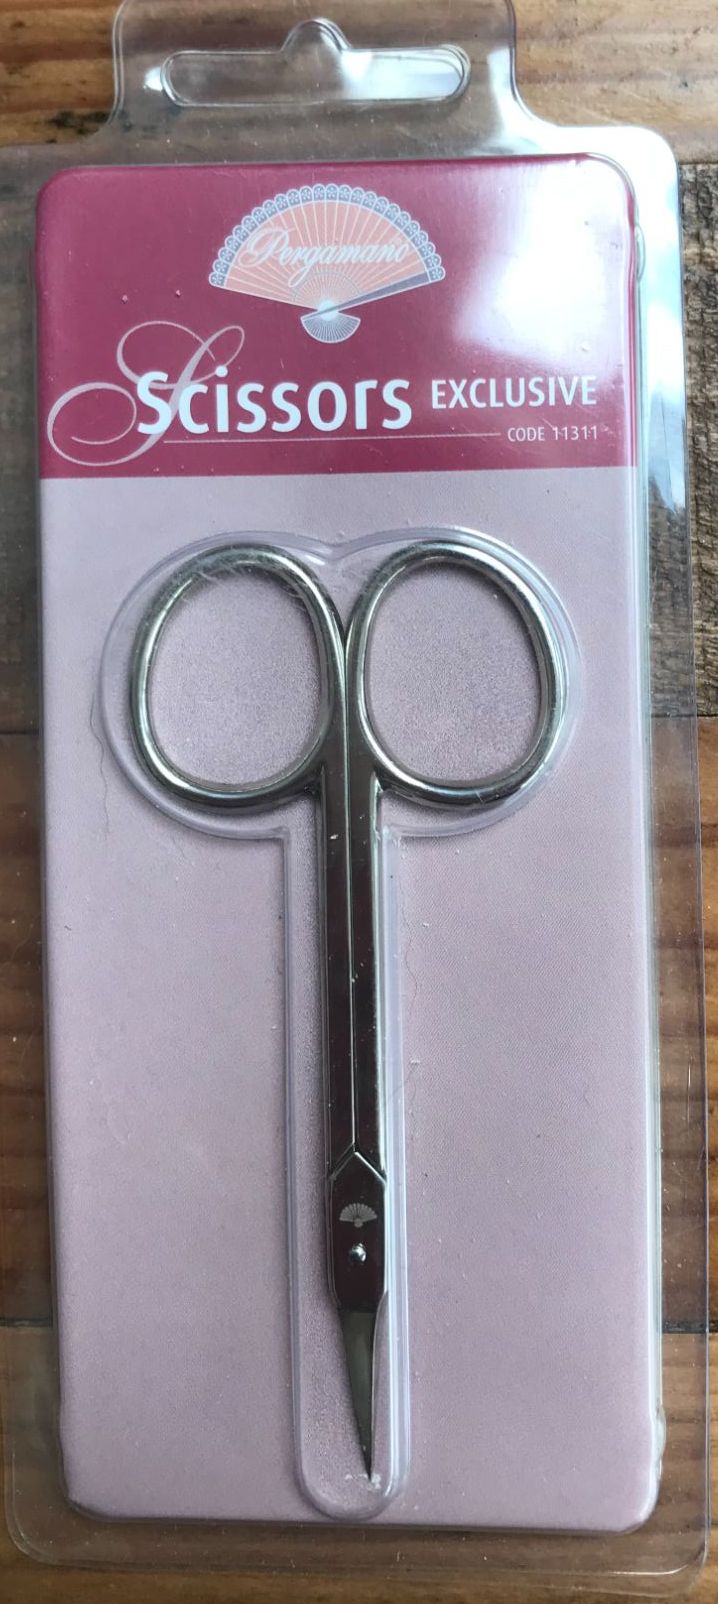 11311 Parchment Scissors Exclusive